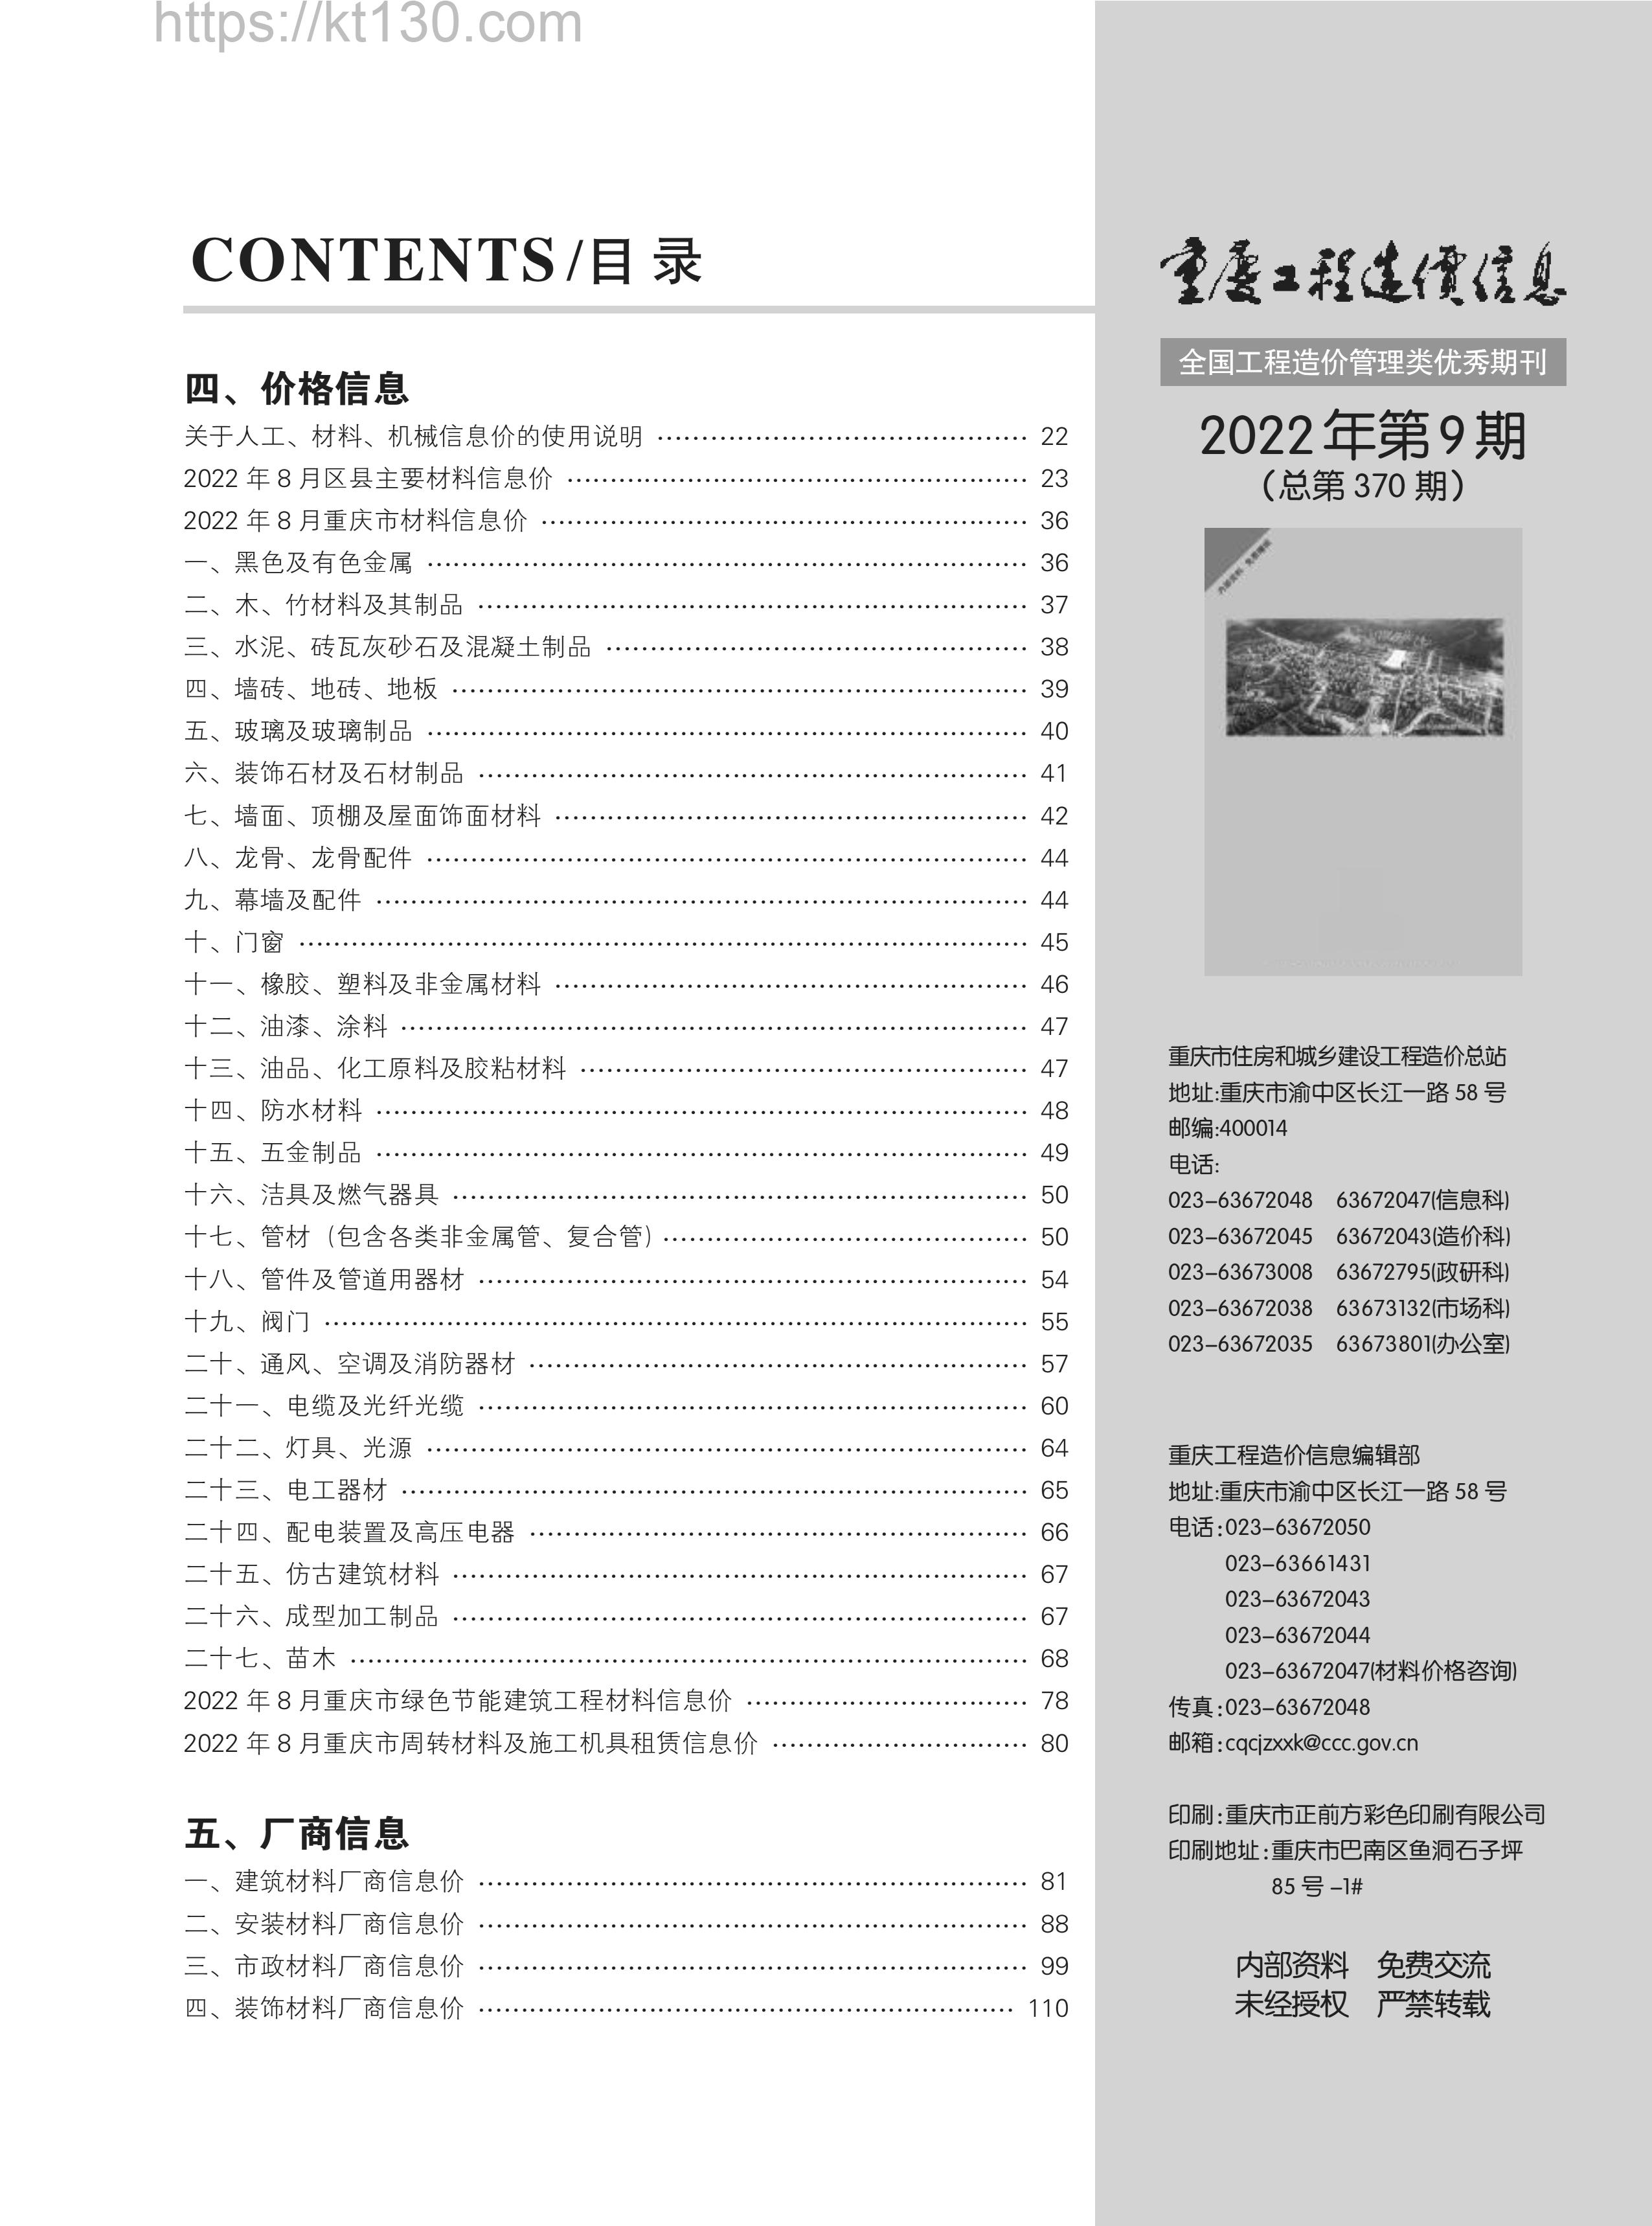 重庆市2022年第九期建筑材料价_目录